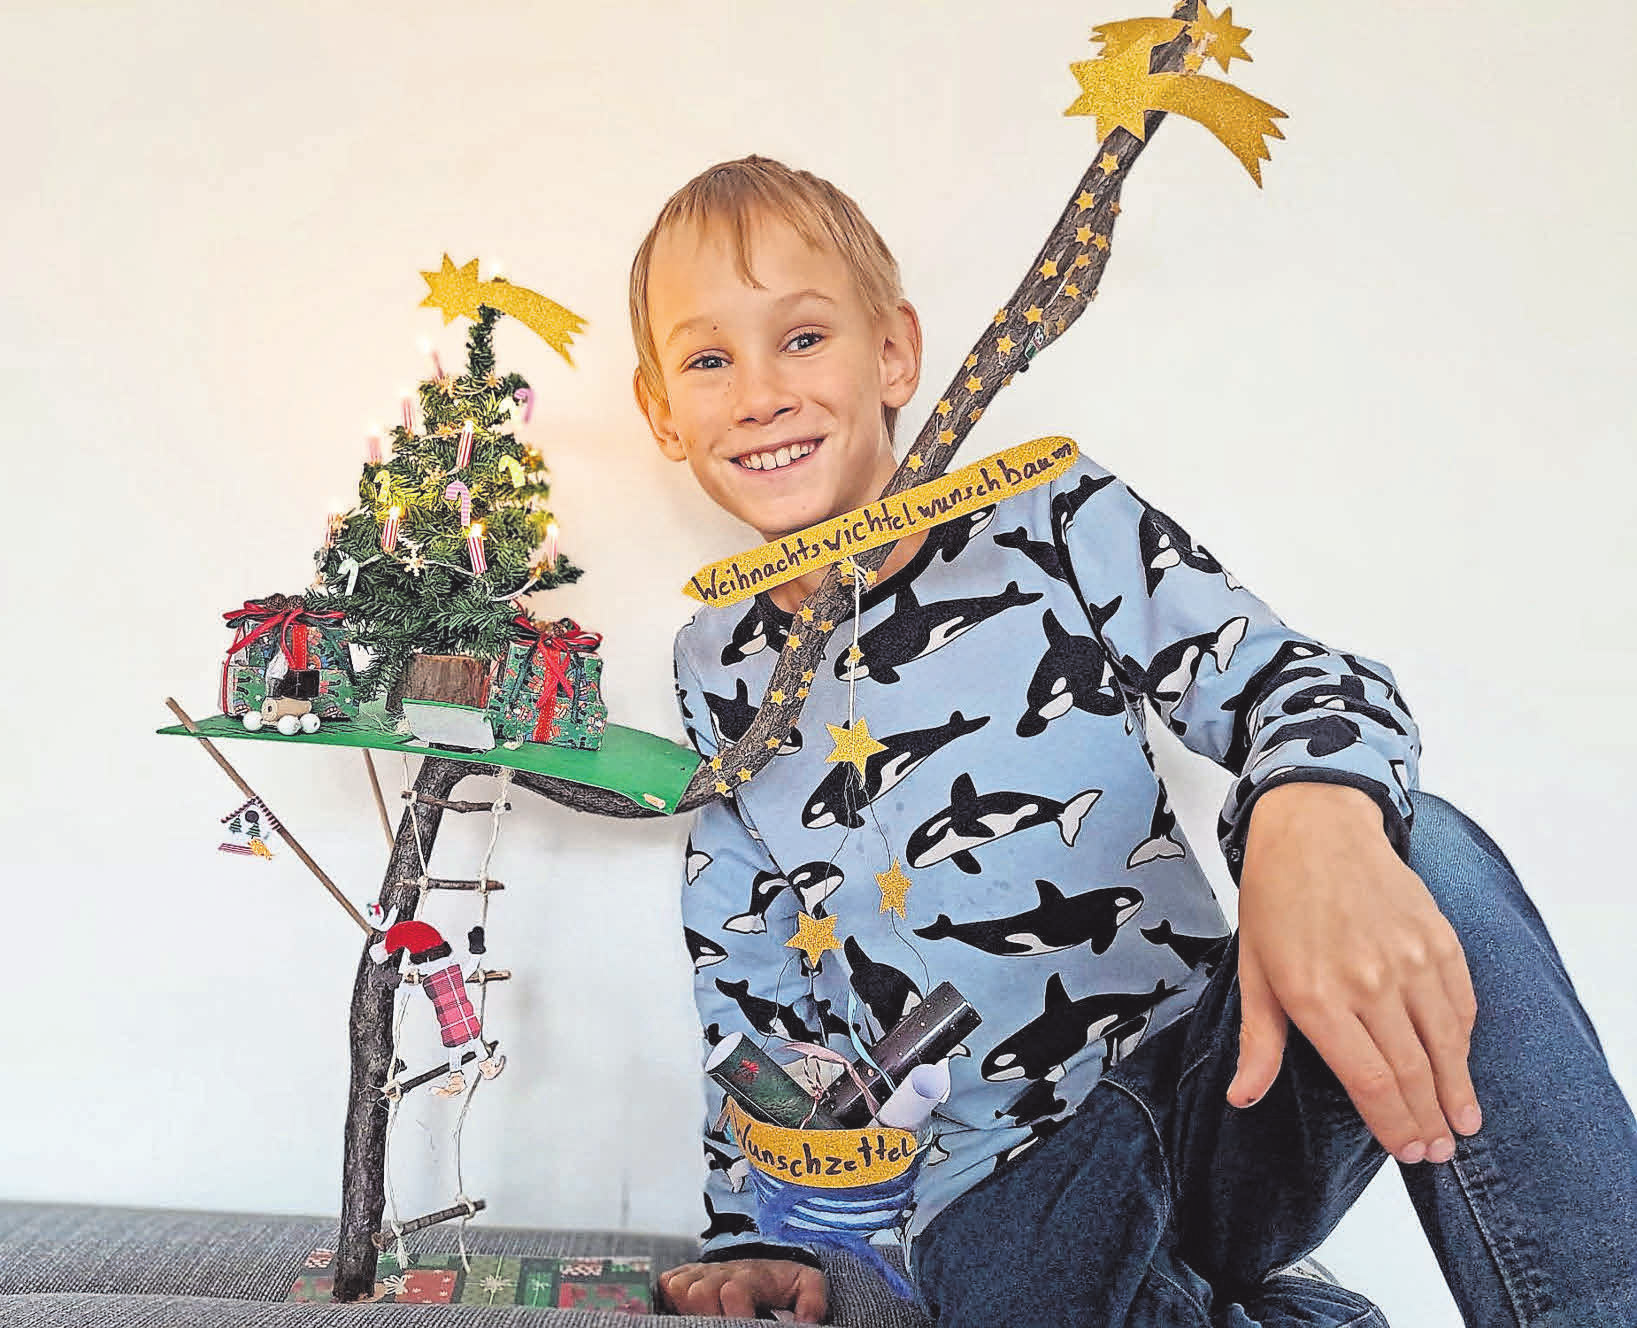 Eine Einsendung von Frederik Bauer: Der Weihnachtswichtelwunschbaum ist magisch. Die Kinder können ihre Wunschzettel im Korb abgeben und der Baum verwandelt sie mit Hilfe der Wichtel zu echten Geschenken... Gebastelt von Fredi (9 Jahre)